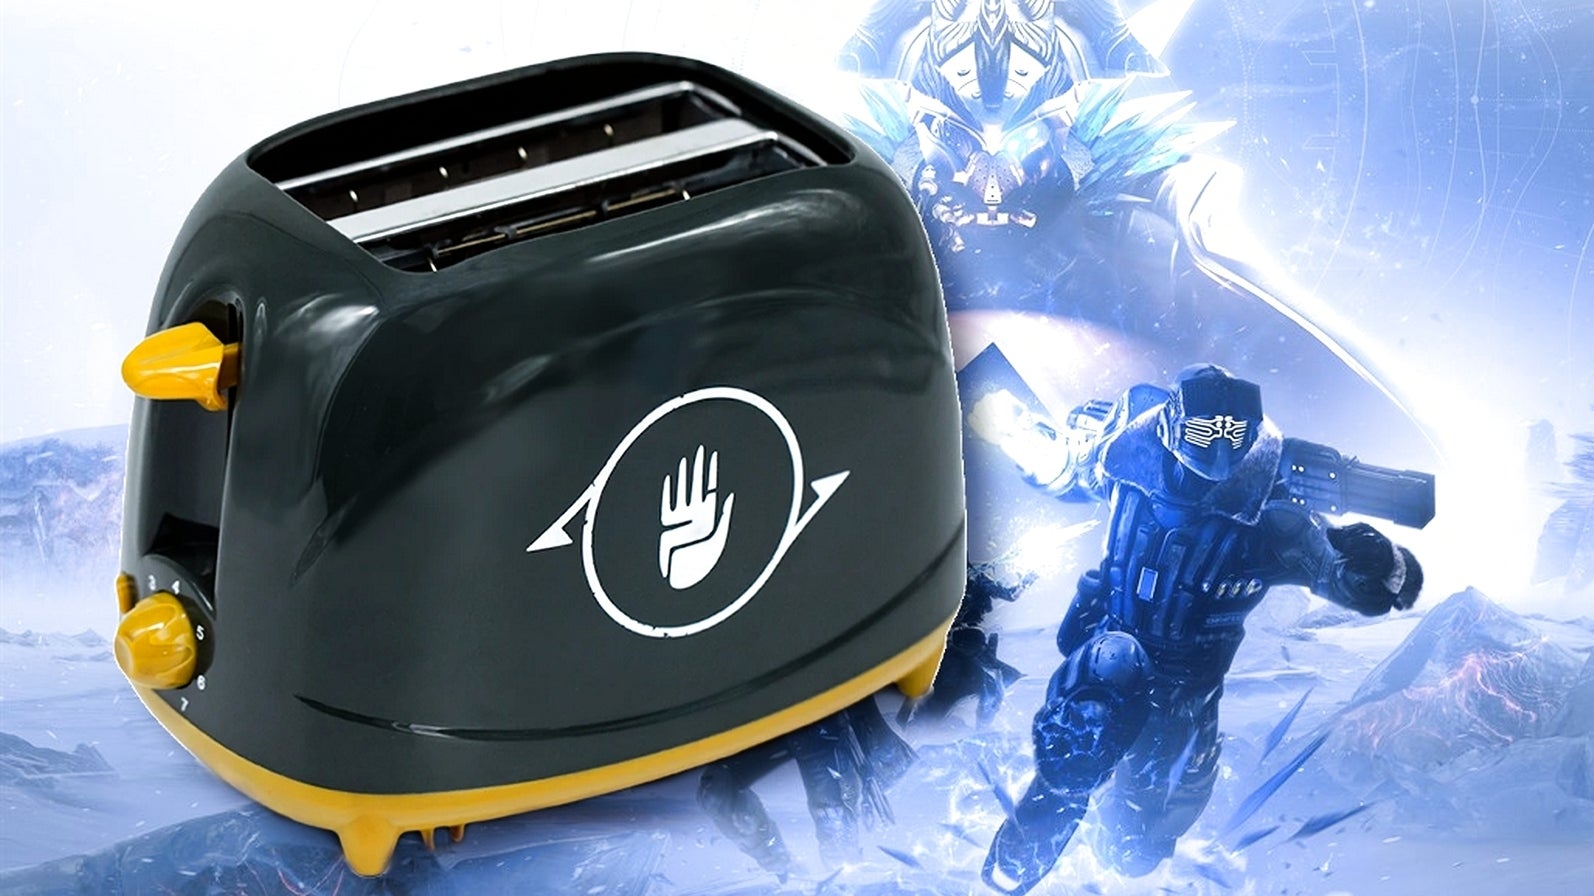 Bilder zu Haltet euch fest, ein offizieller Destiny-Toaster erscheint bald!